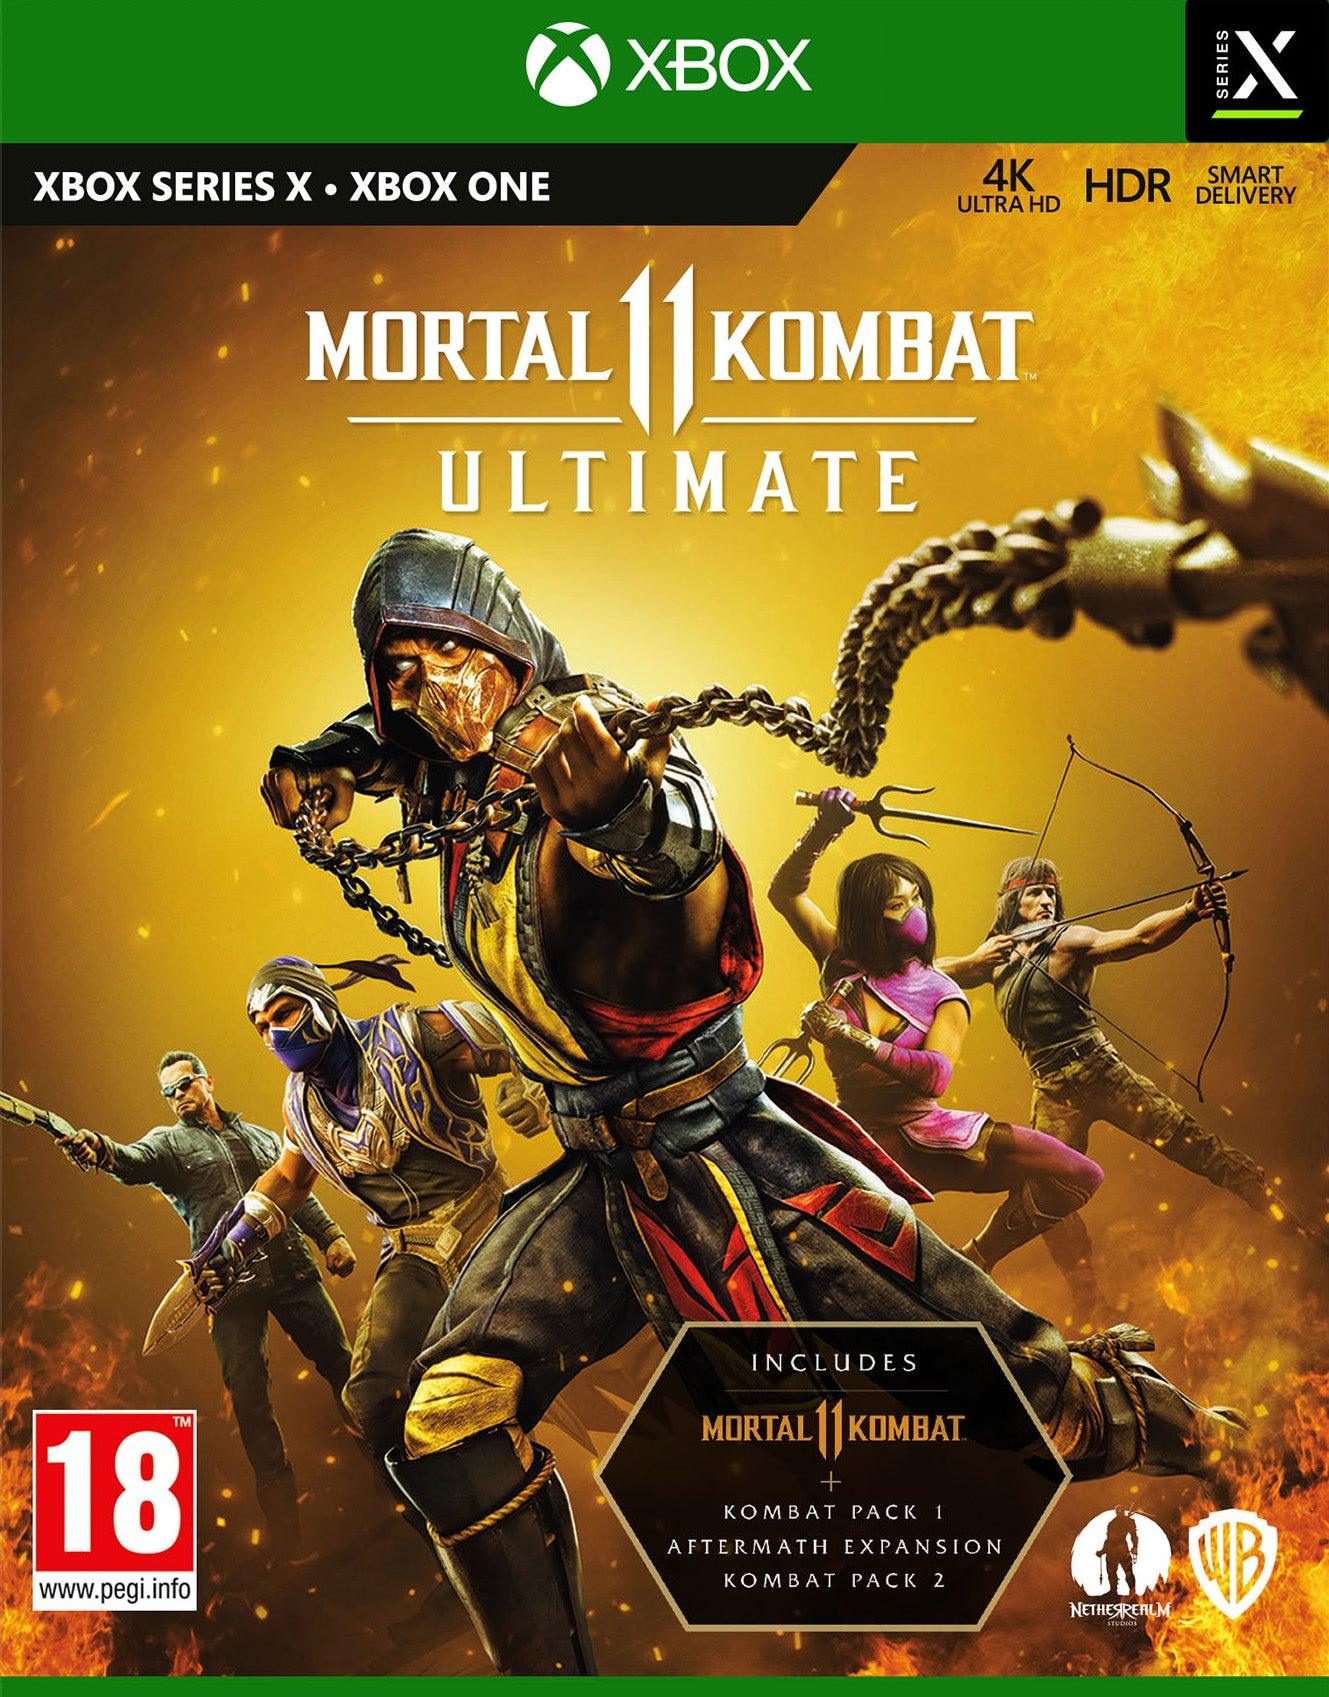 Mortal Kombat 11 Ultimate - Want a New Gadget